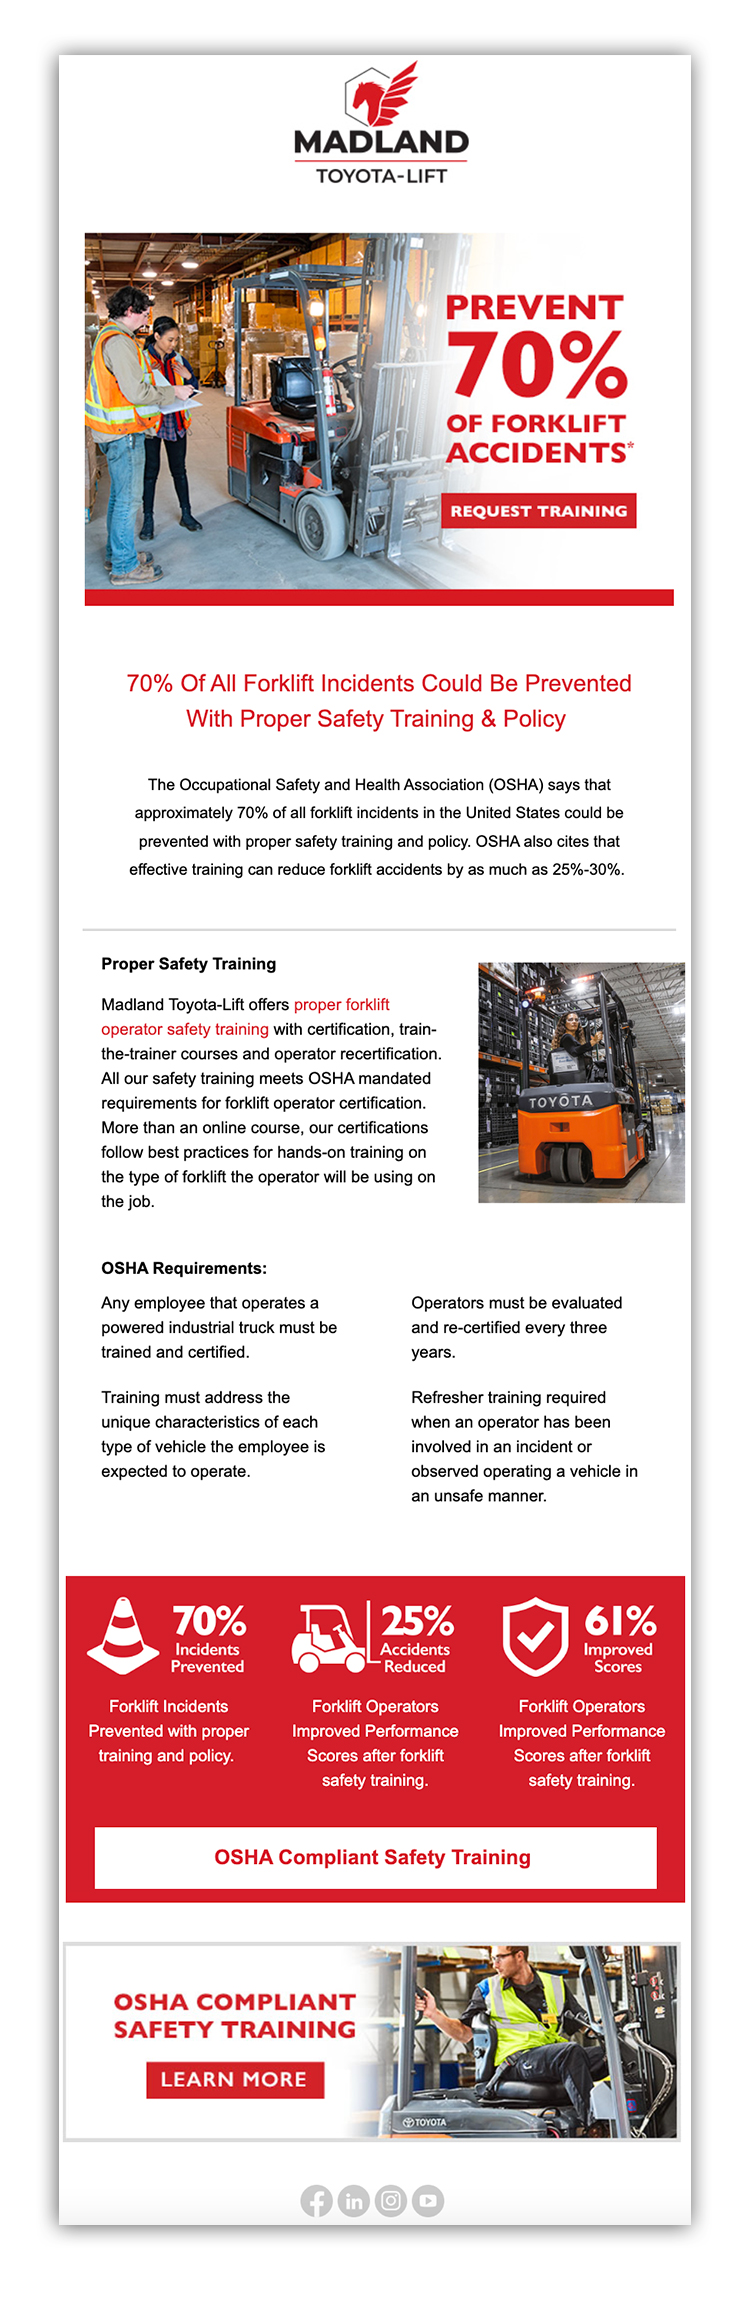 Email marketing of OSHA safety training